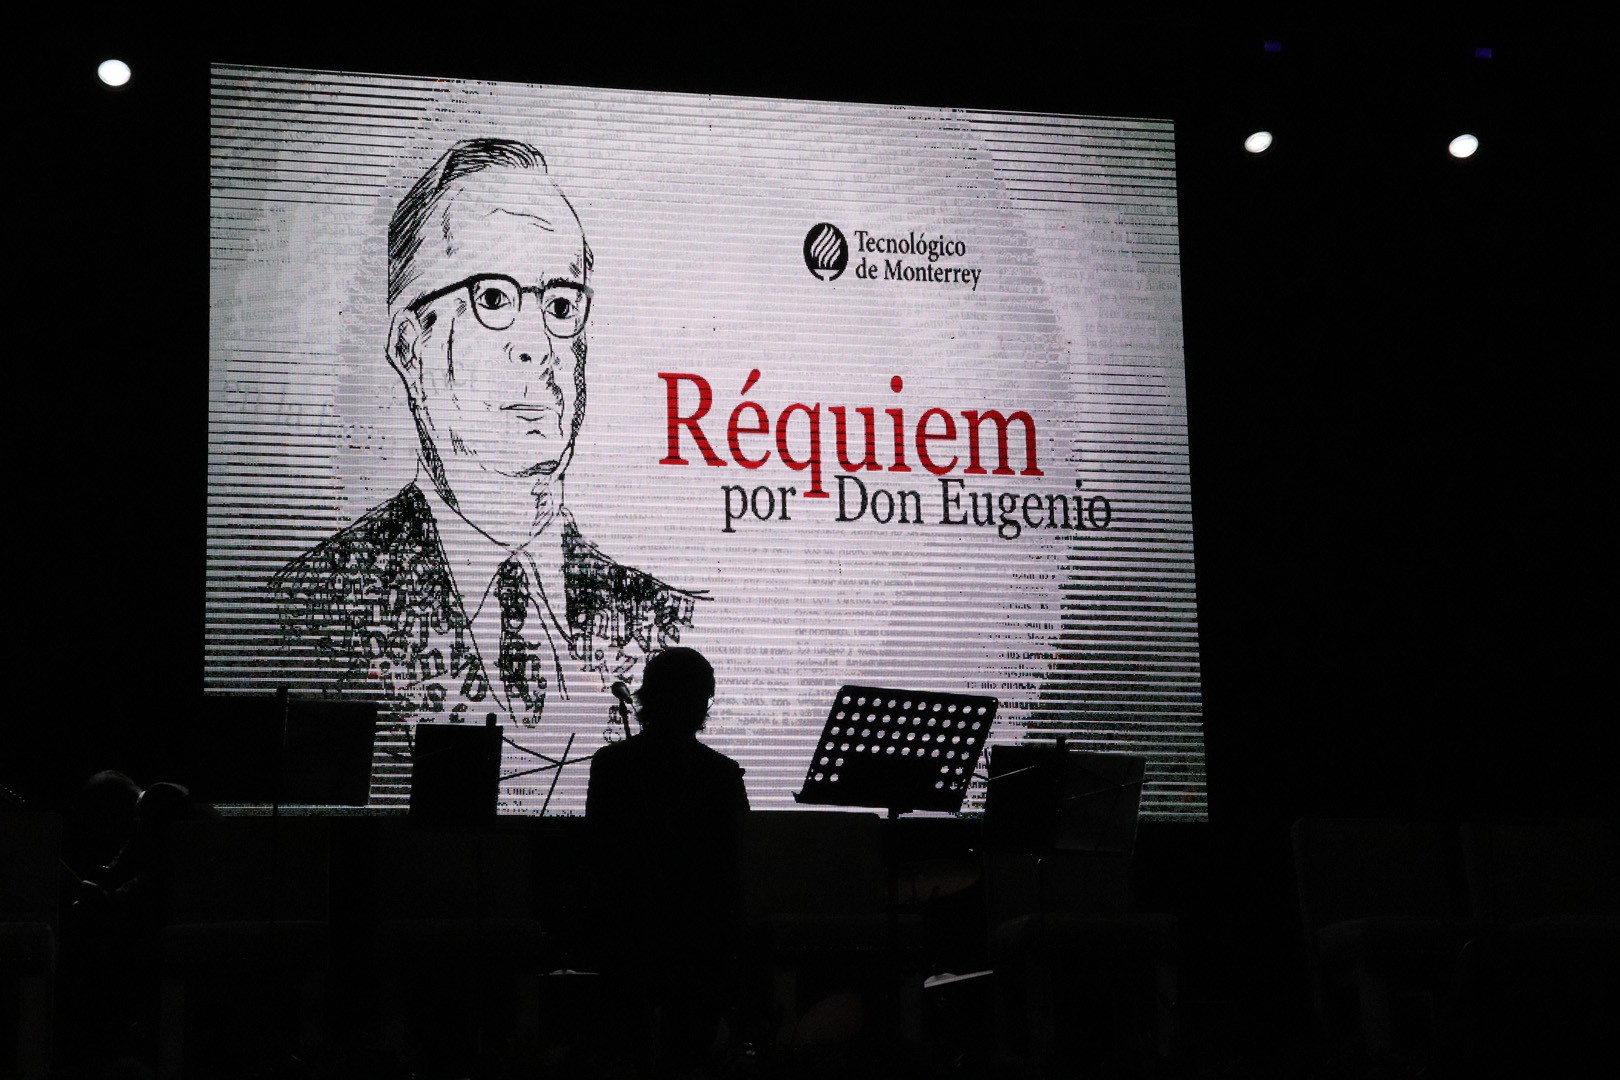 Requiem por Don Eugenio, Cd. Obregón